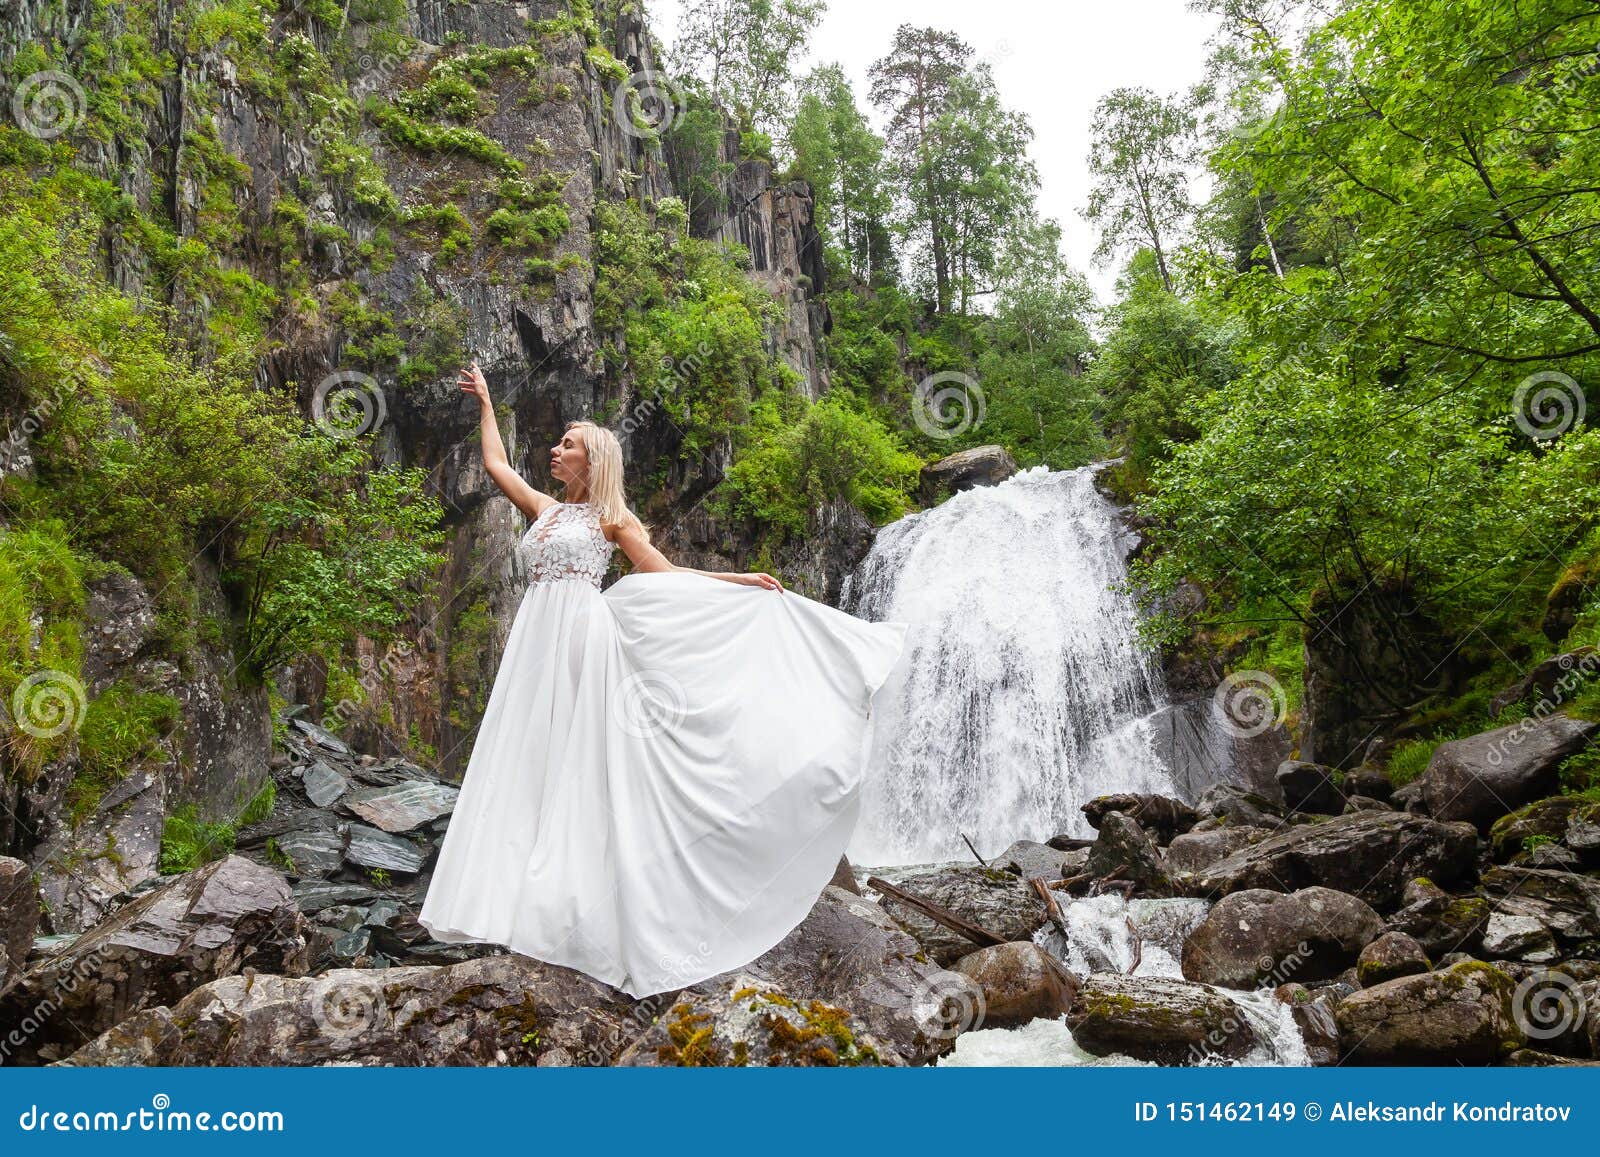 Ένα νέο ξανθό κορίτσι σε έναν κομψό θέτει σηκώνει ένα φόρεμα μπουντουάρ στα βουνά ενάντια σε έναν καταρράκτη και τις πέτρες αυξάνοντας τα χέρια της επάνω όπως ένα ballerina μια θερμή θερινή ημέρα σε Altai με τα πράσινα δέντρα